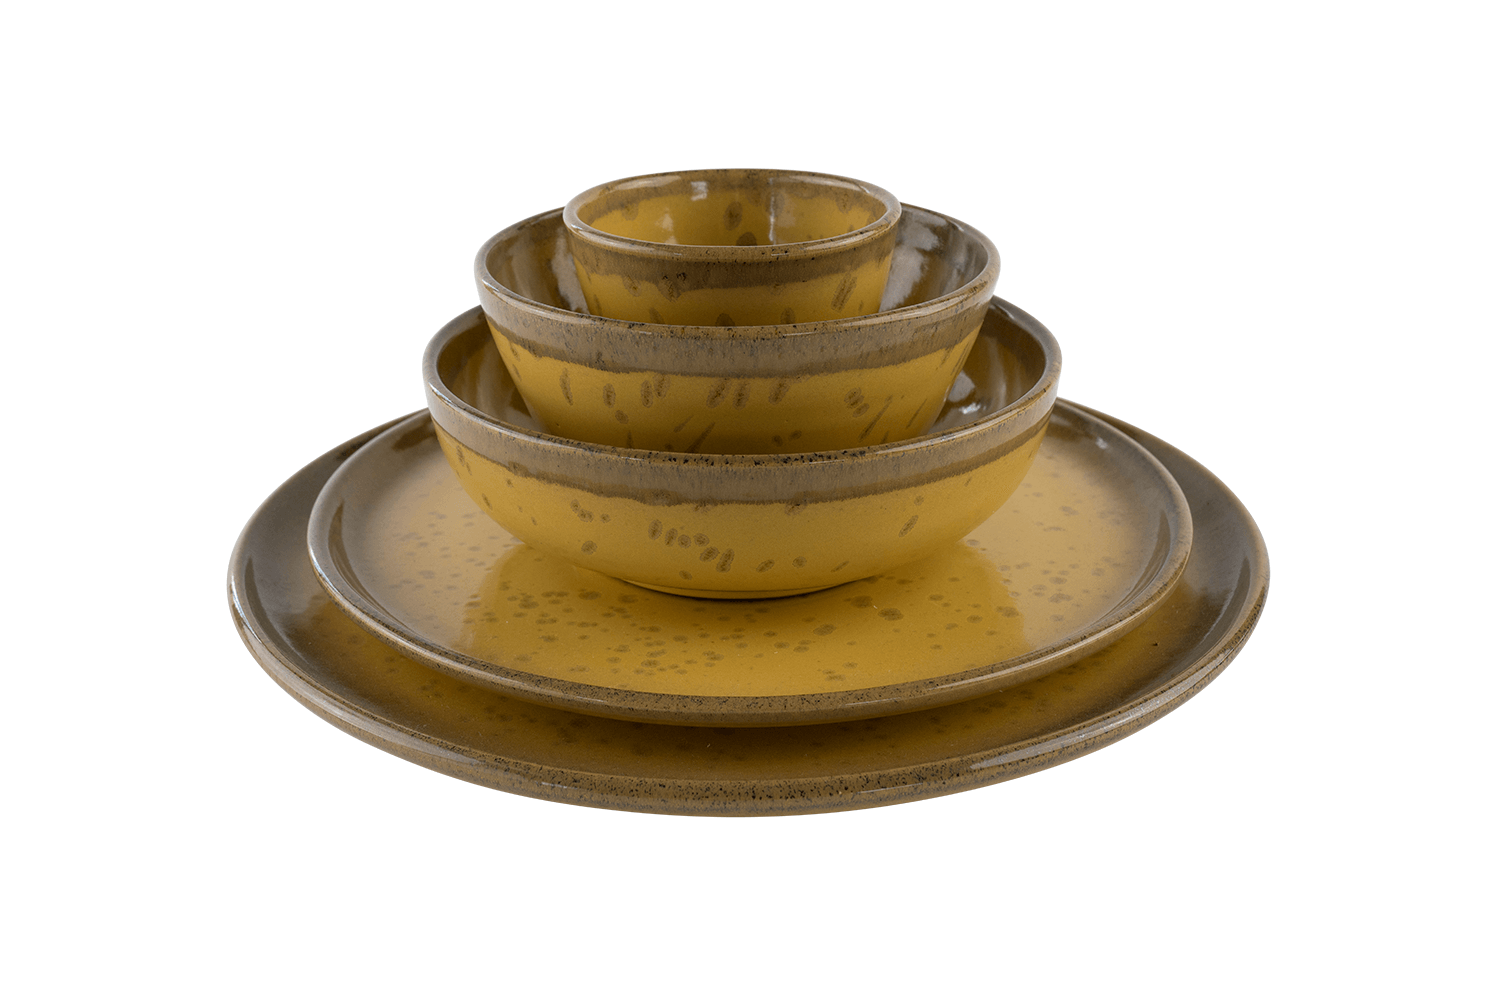 Ein gelbes Keramik-Geschirrset